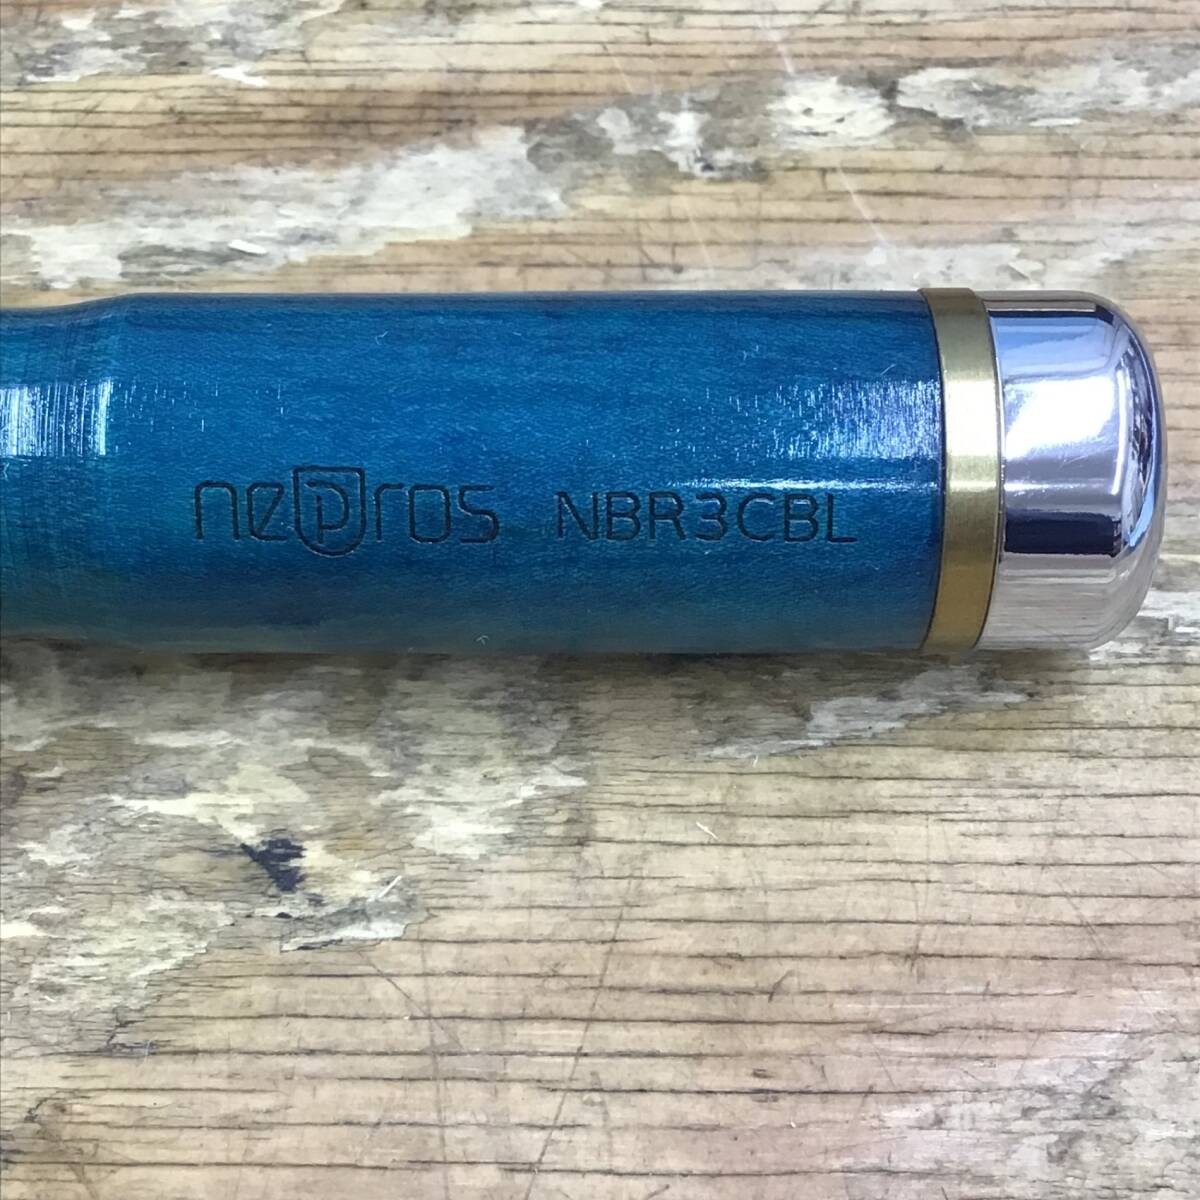 【美品】nepros/ネプロス ミラーネプロス 9.5sq 木柄ラチェットハンドル NBR3CBL 青 木箱付の画像2